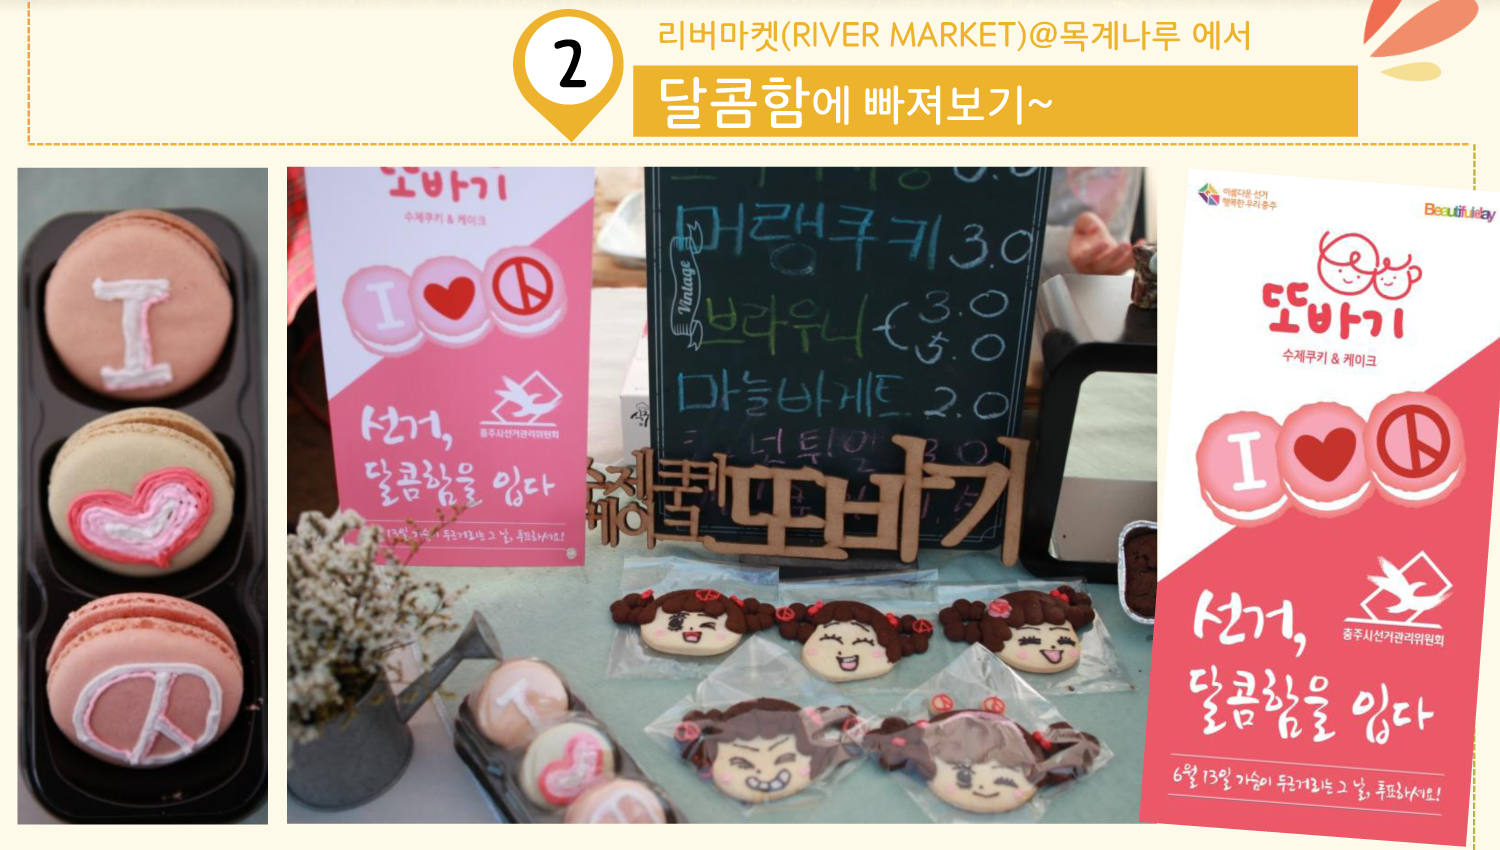 2. 리버마켓(RIVER MARKET)@목계나루에서 달콤함에 빠져보기. 민주시민홍보대사 자두와 기표모양의 쿠키판매 사진